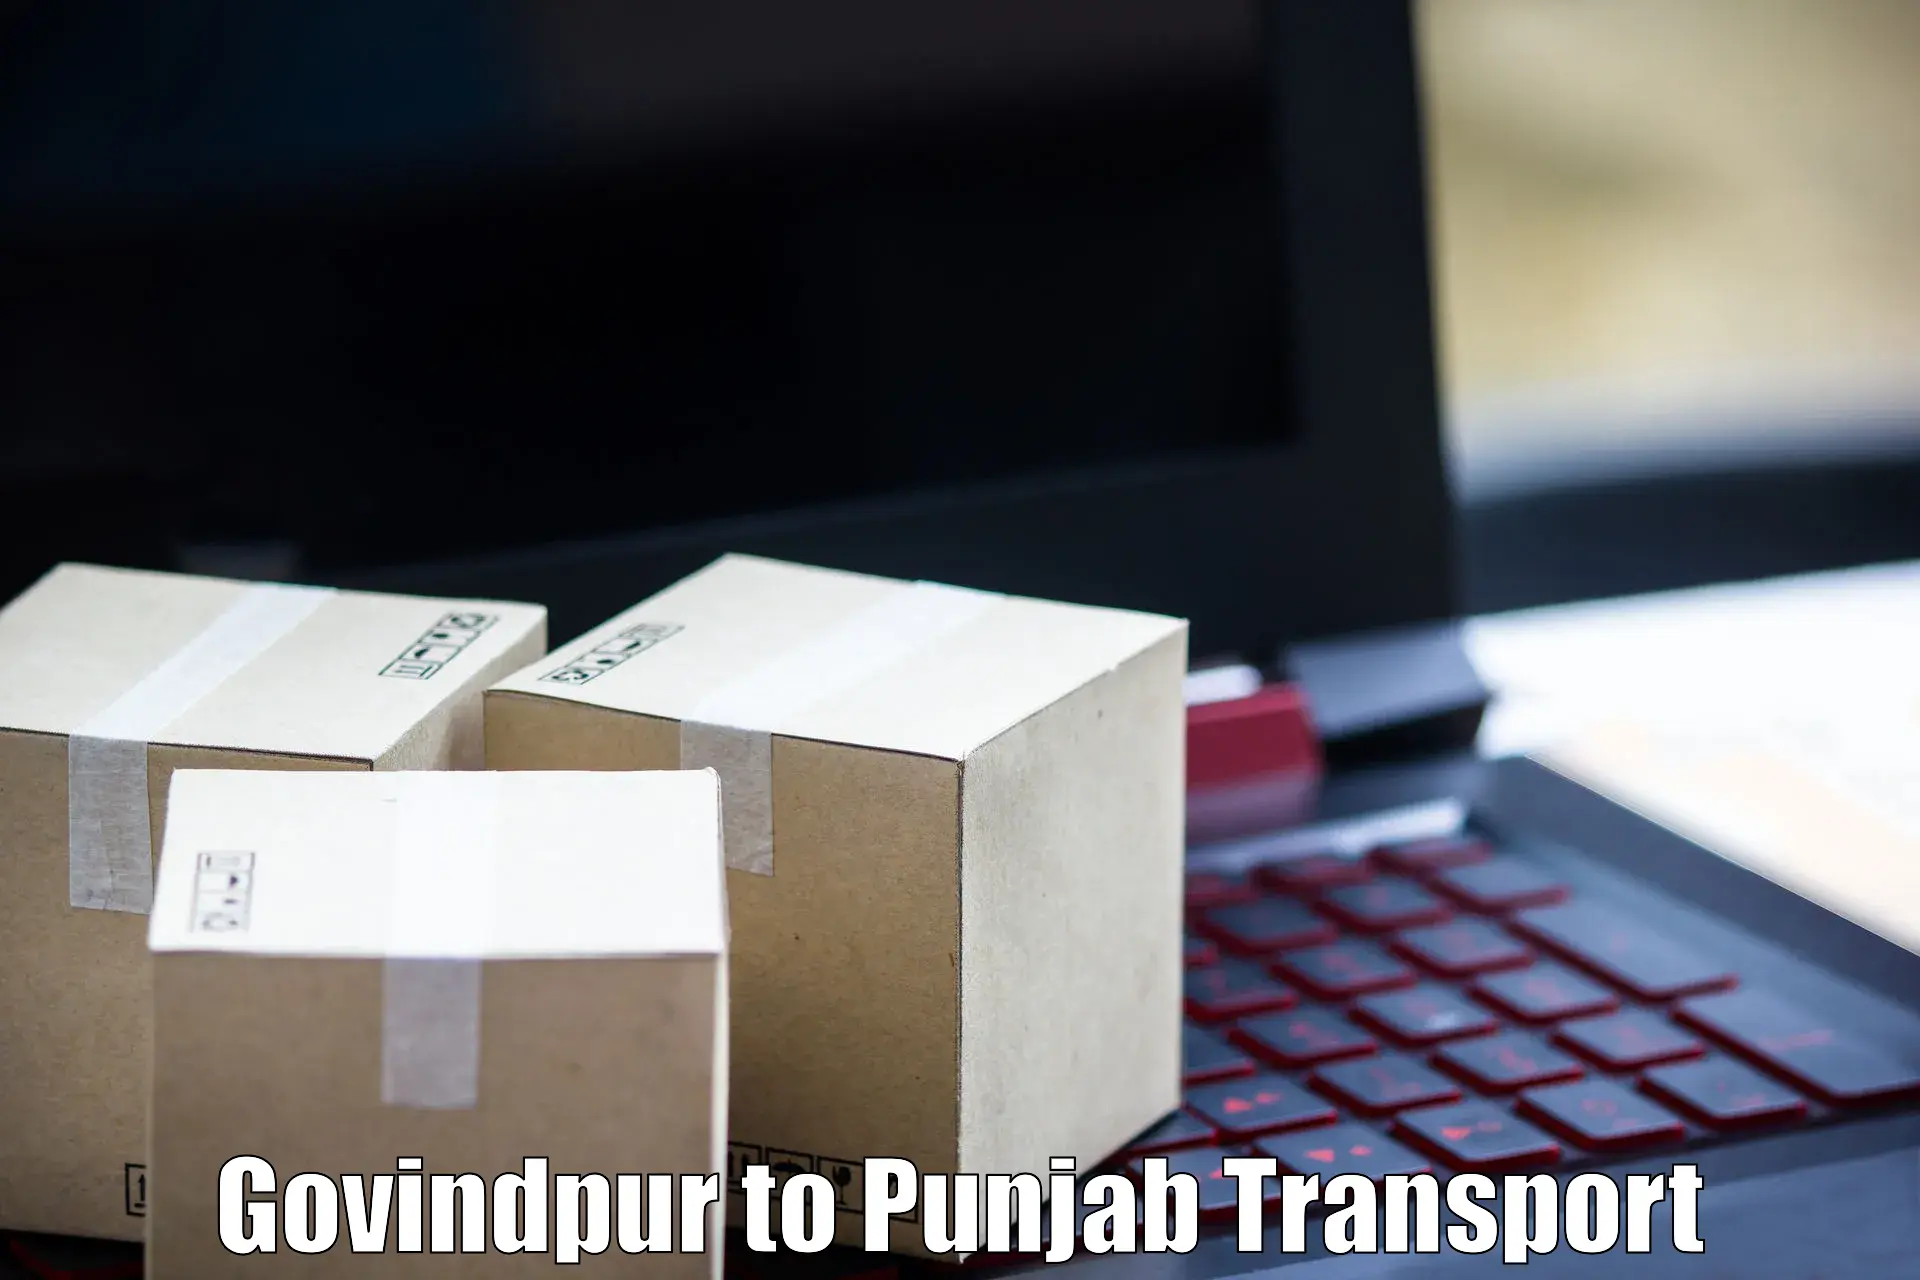 Pick up transport service Govindpur to Sri Hargobindpur